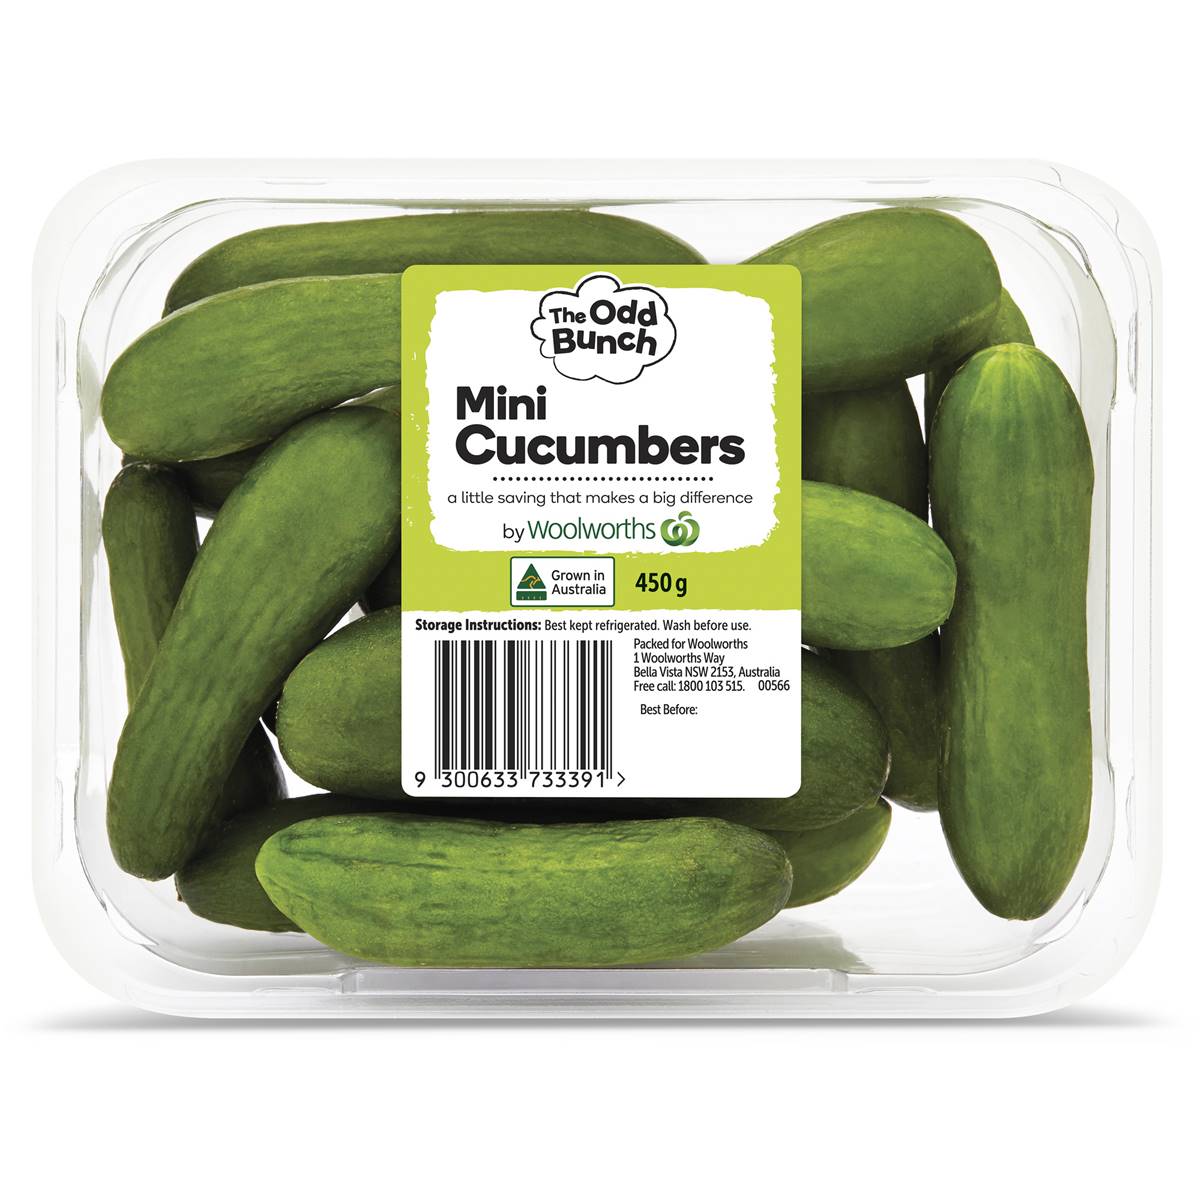 Calories in The Odd Bunch Mini Cucumber Punnet